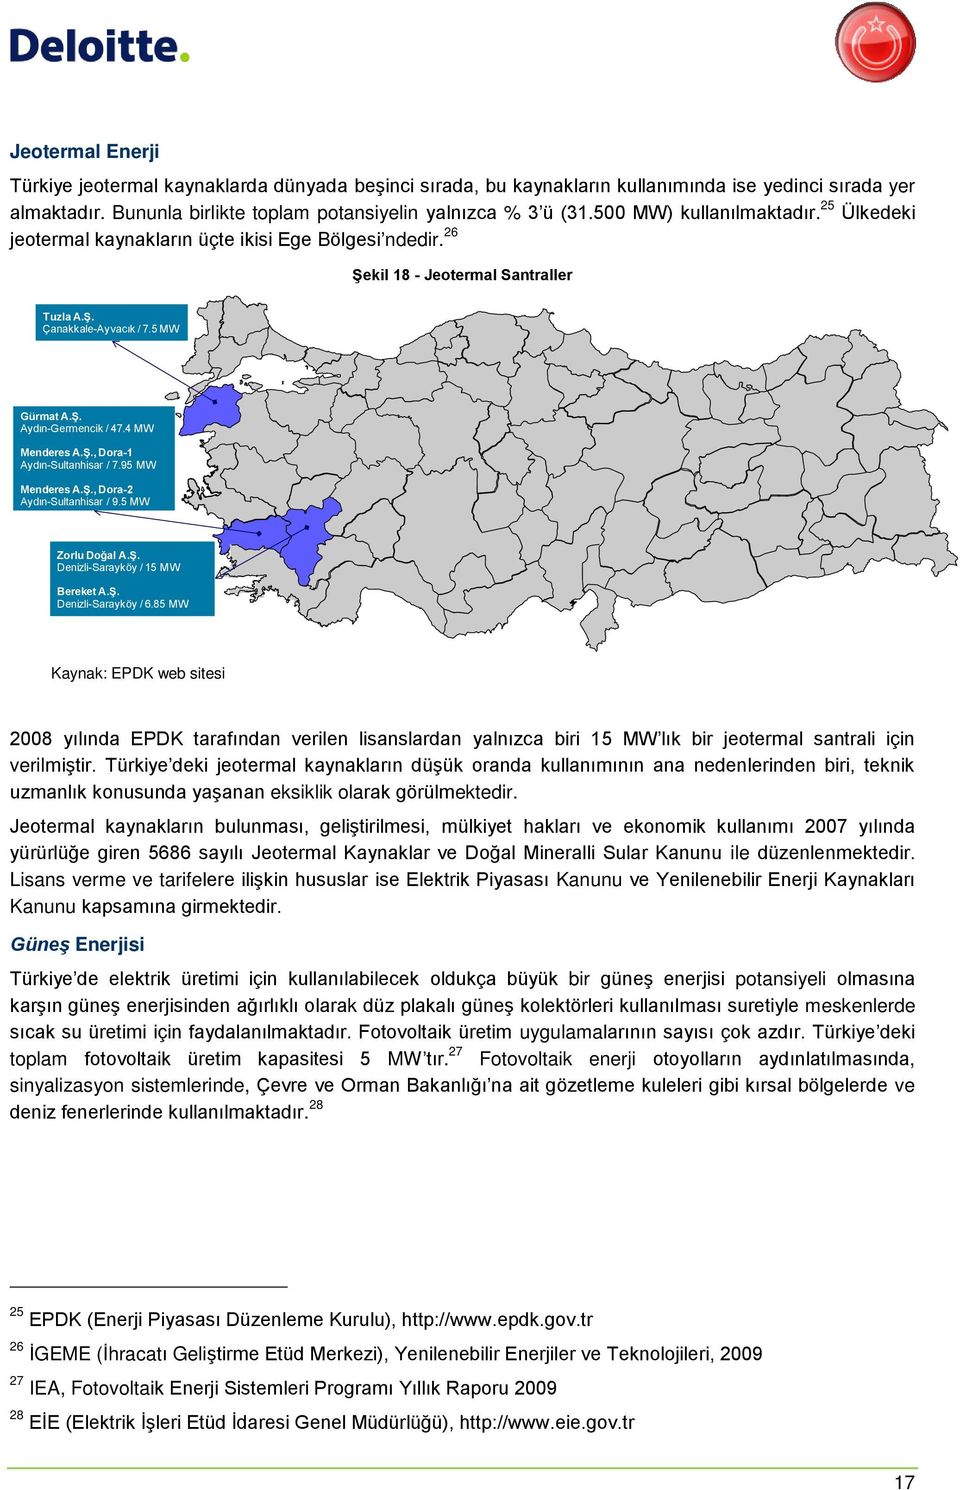 4 MW Menderes A.Ş., Dora-1 Aydın-Sultanhisar / 7.95 MW Menderes A.Ş., Dora-2 Aydın-Sultanhisar / 9.5 MW Zorlu Doğal A.Ş. Denizli-Sarayköy / 15 MW Bereket A.Ş. Denizli-Sarayköy / 6.